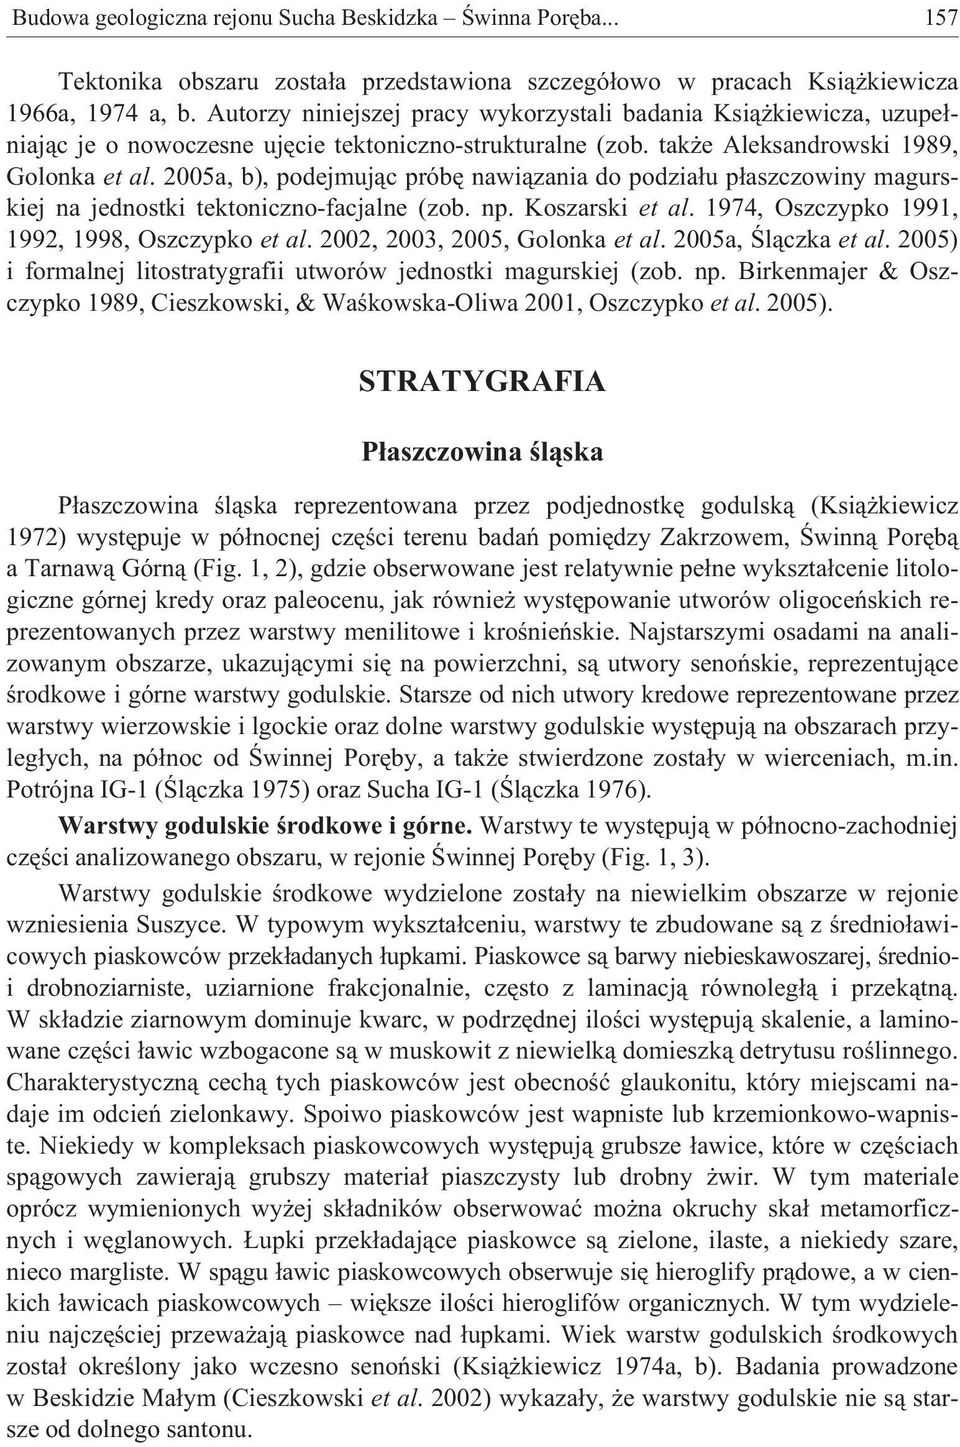 2005a, b), podejmuj¹c próbê nawi¹zania do podzia³u p³aszczowiny magurskiej na jednostki tektoniczno-facjalne (zob. np. Koszarski et al. 1974, Oszczypko 1991, 1992, 1998, Oszczypko et al.